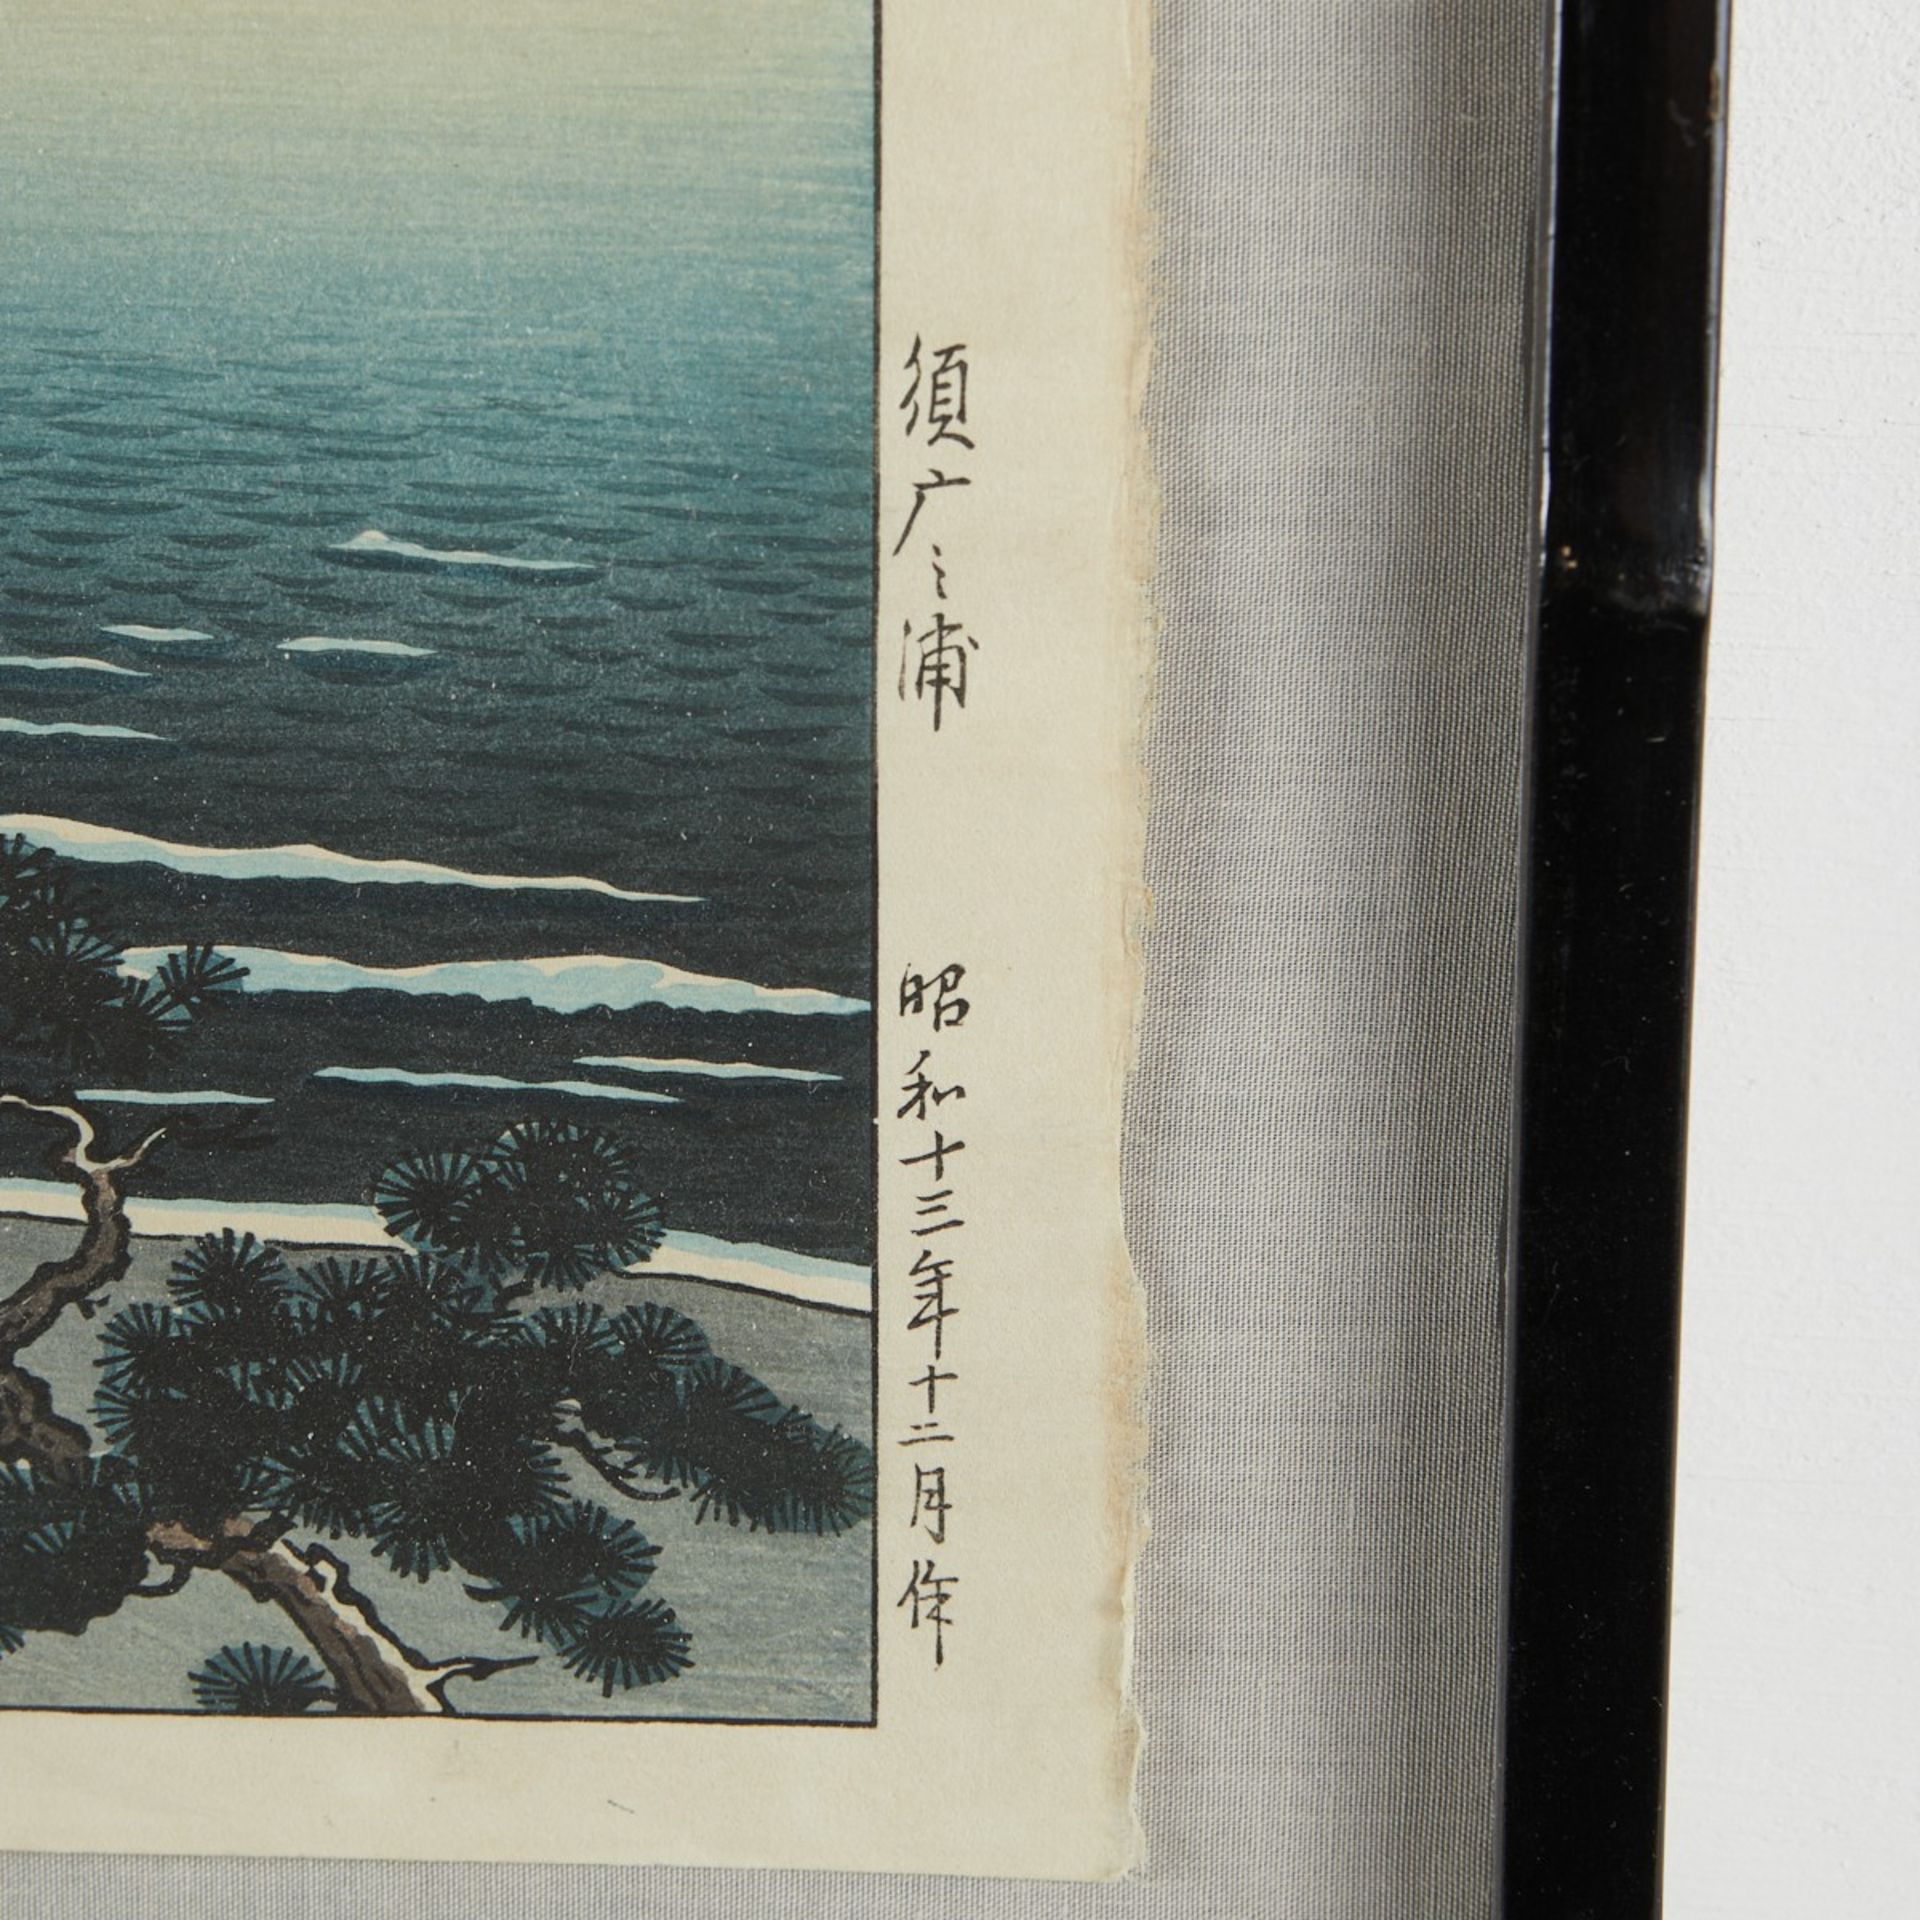 Tsuchiya Koitsu "Suma Beach" Shin-hanga Print - Image 4 of 4